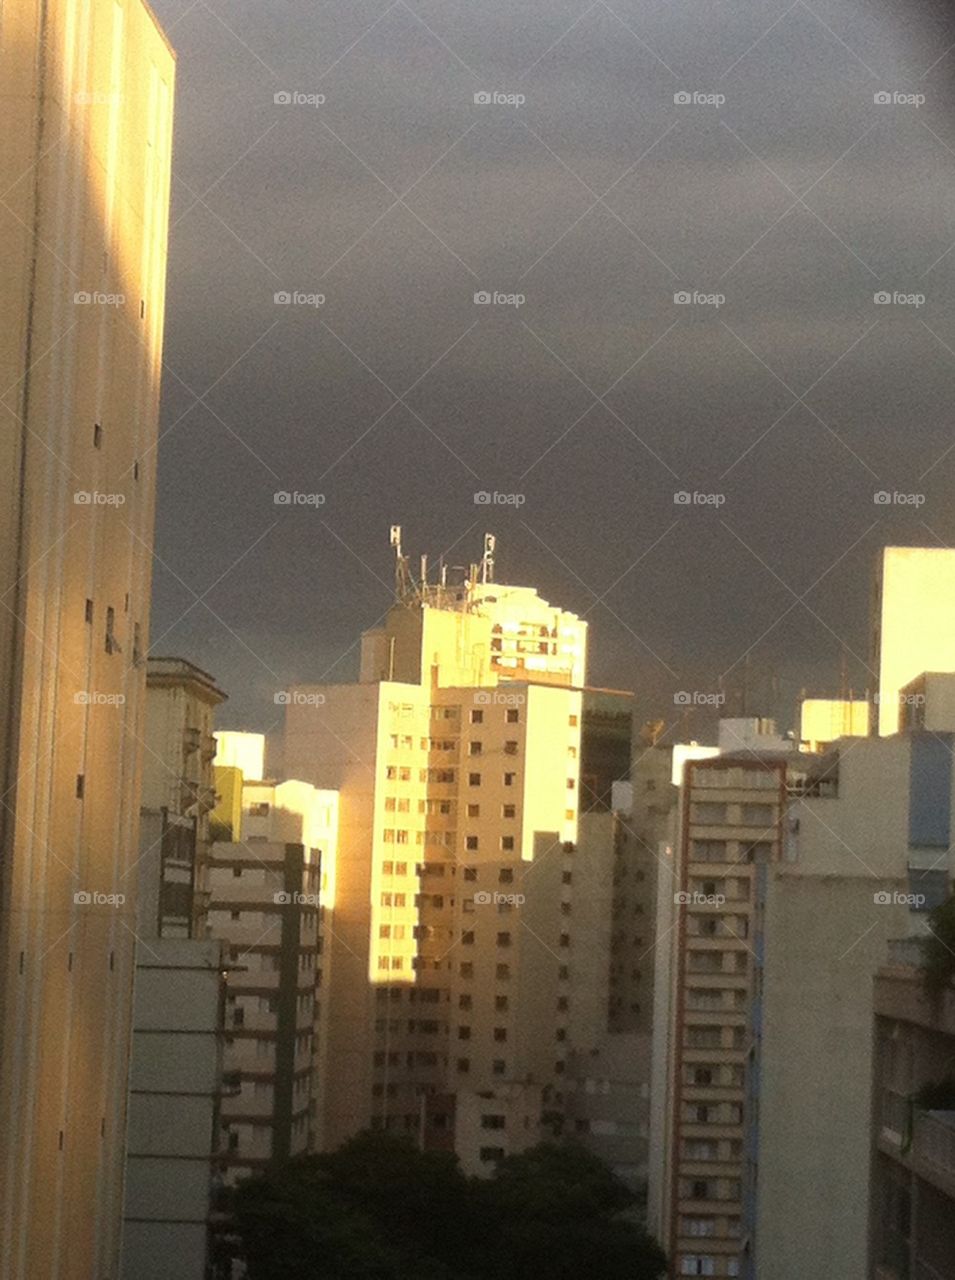 São Paulo sol e chuva